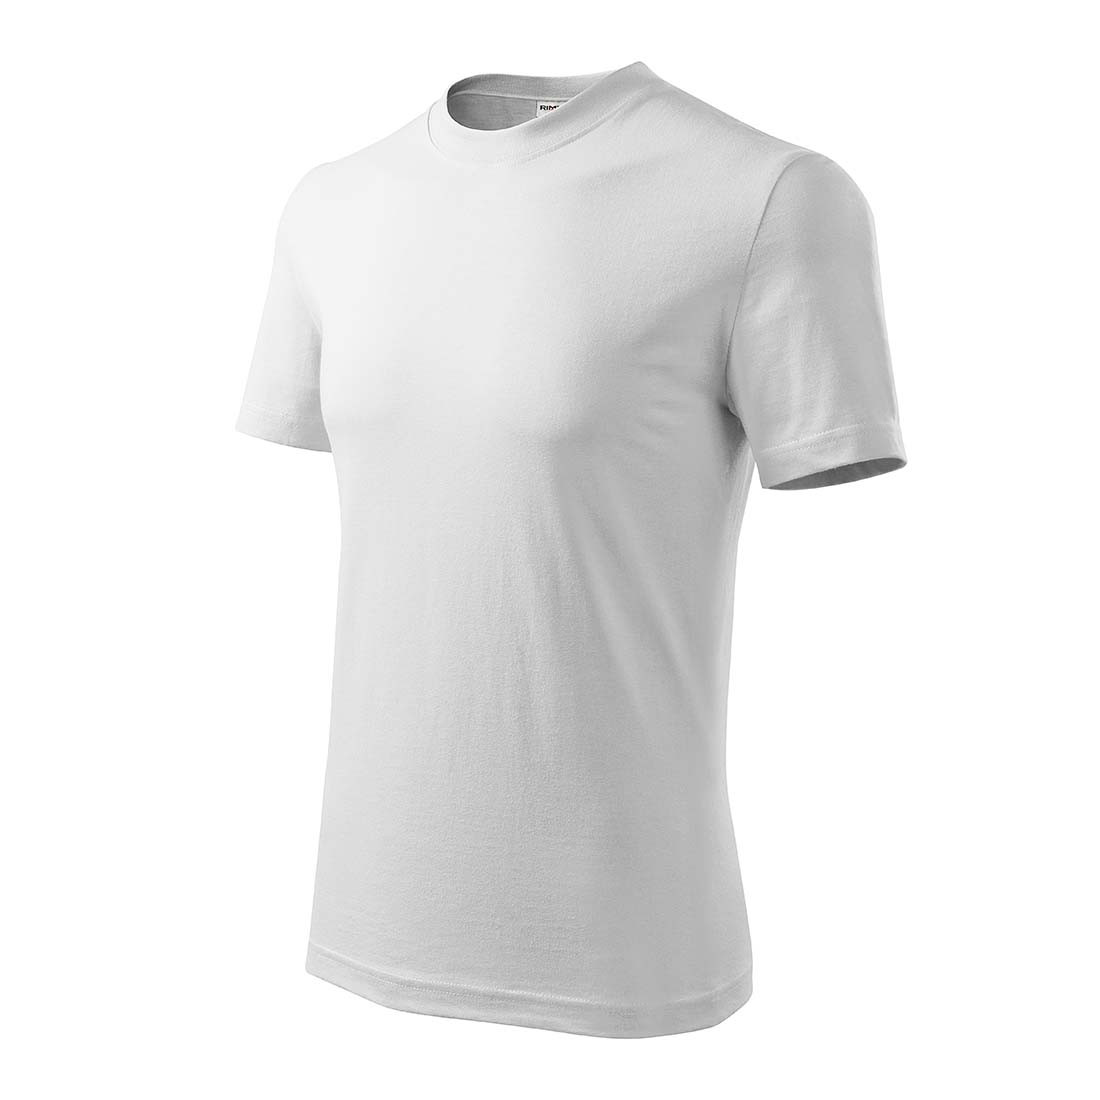 Tee-shirt unisex BASE - Les vêtements de protection